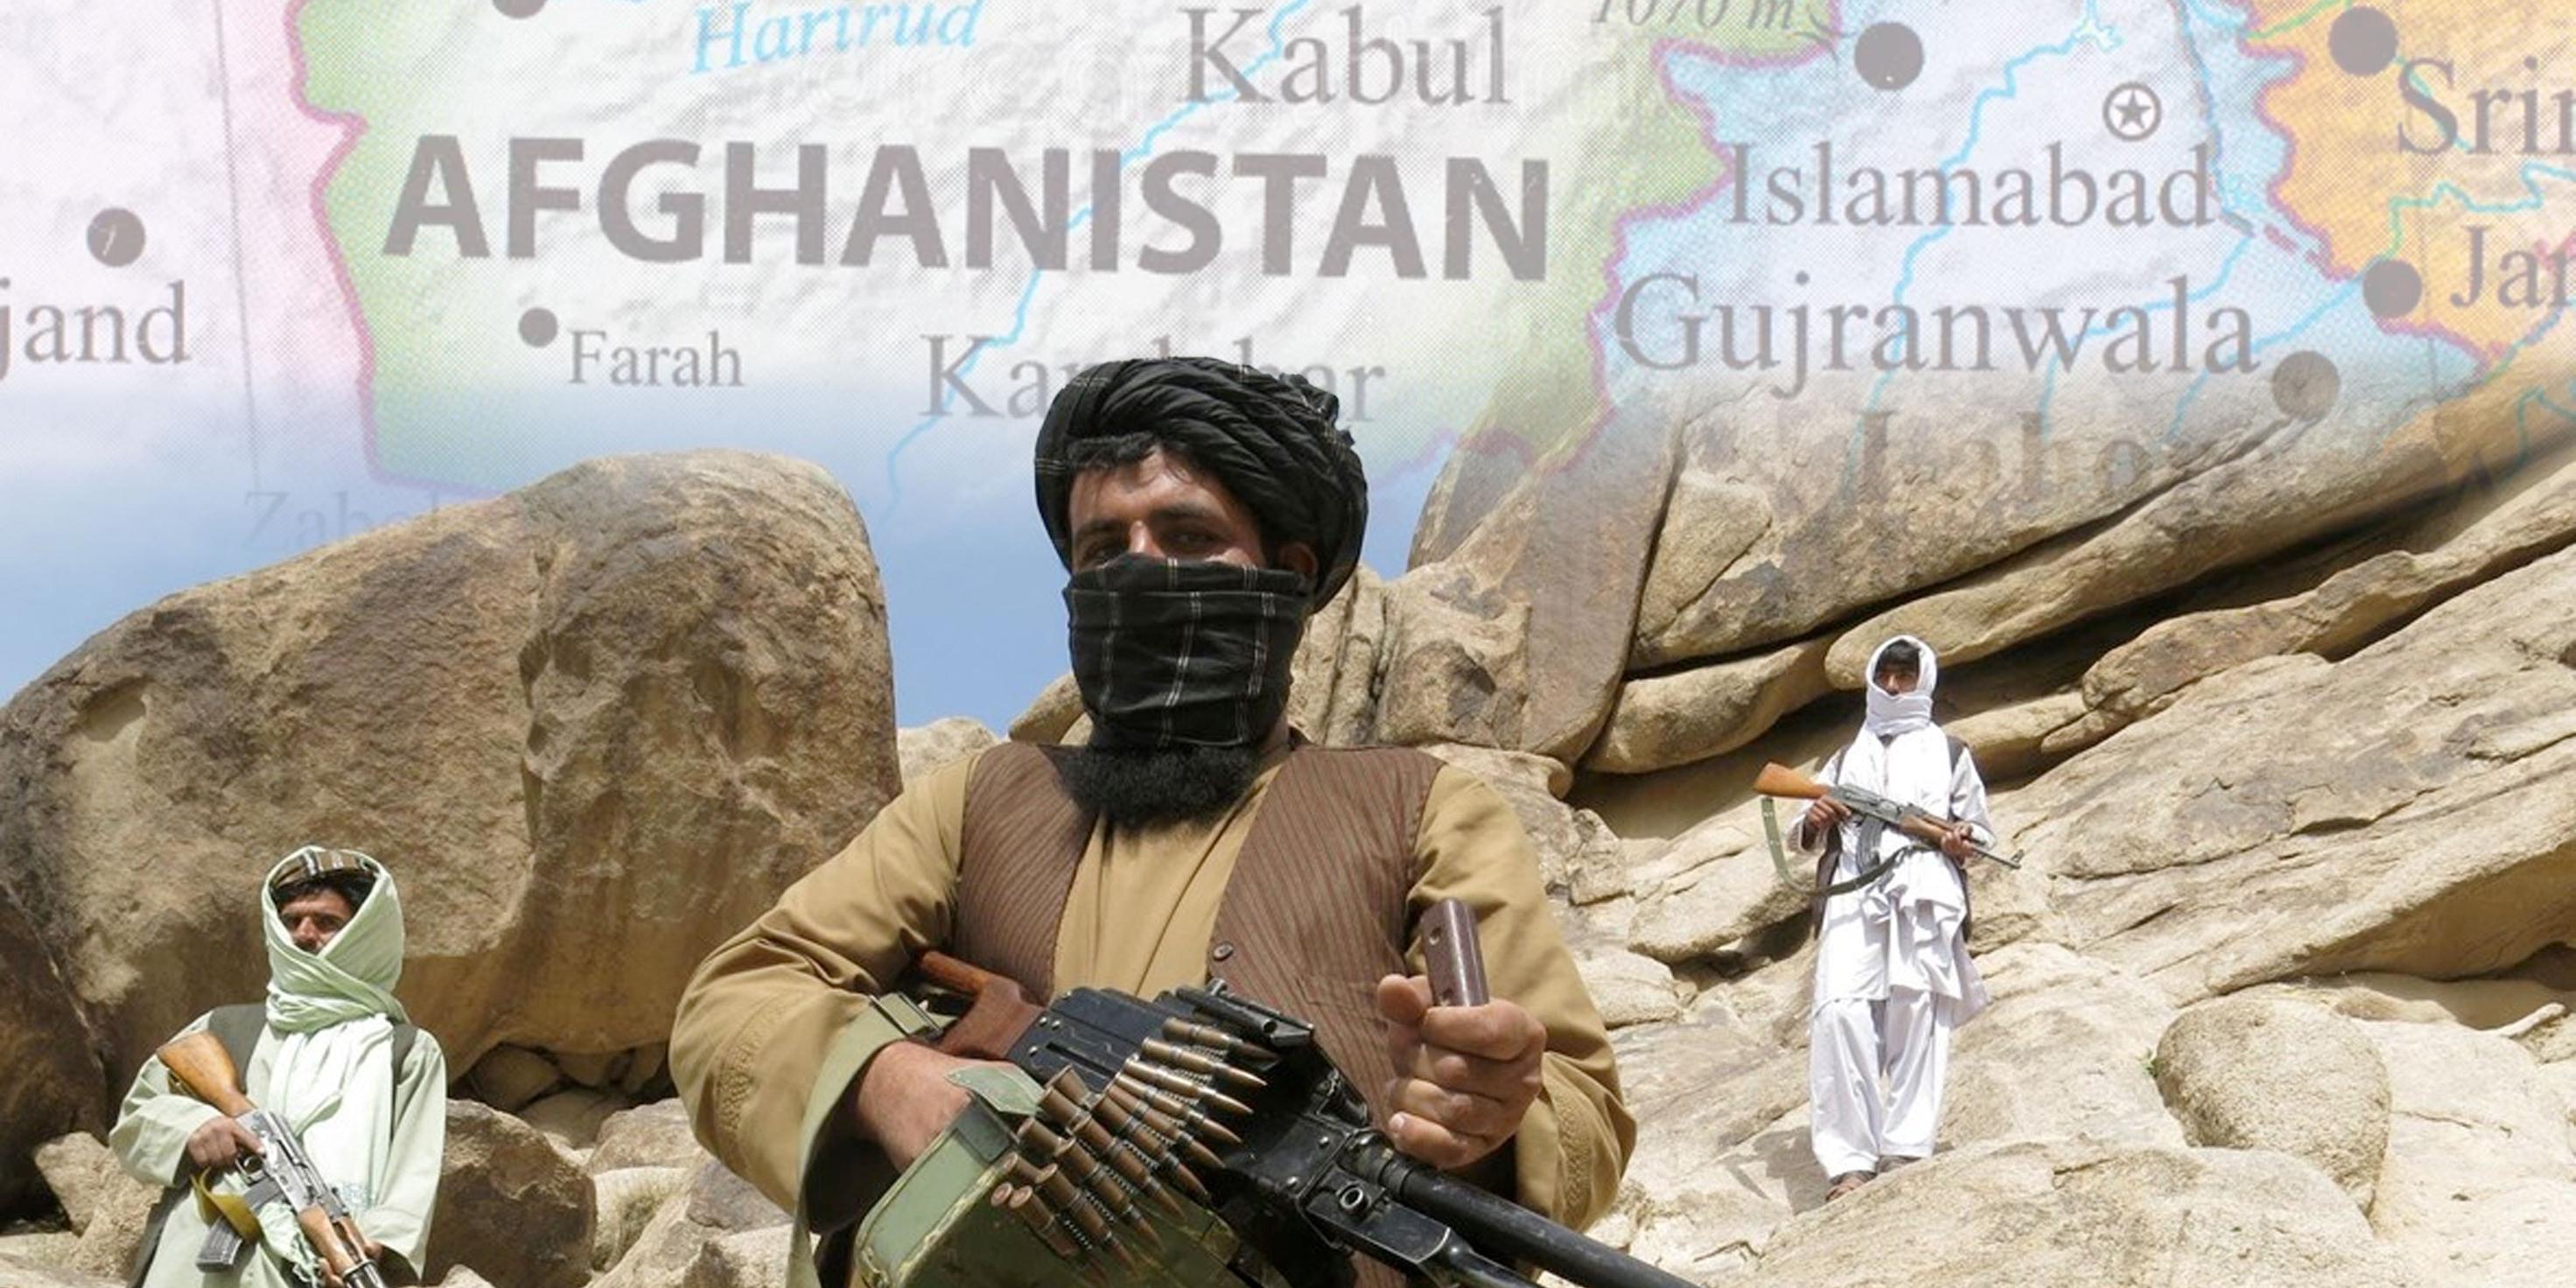 مؤشرات تزايد أنشطة تنظيم القاعدة في أفغانستان